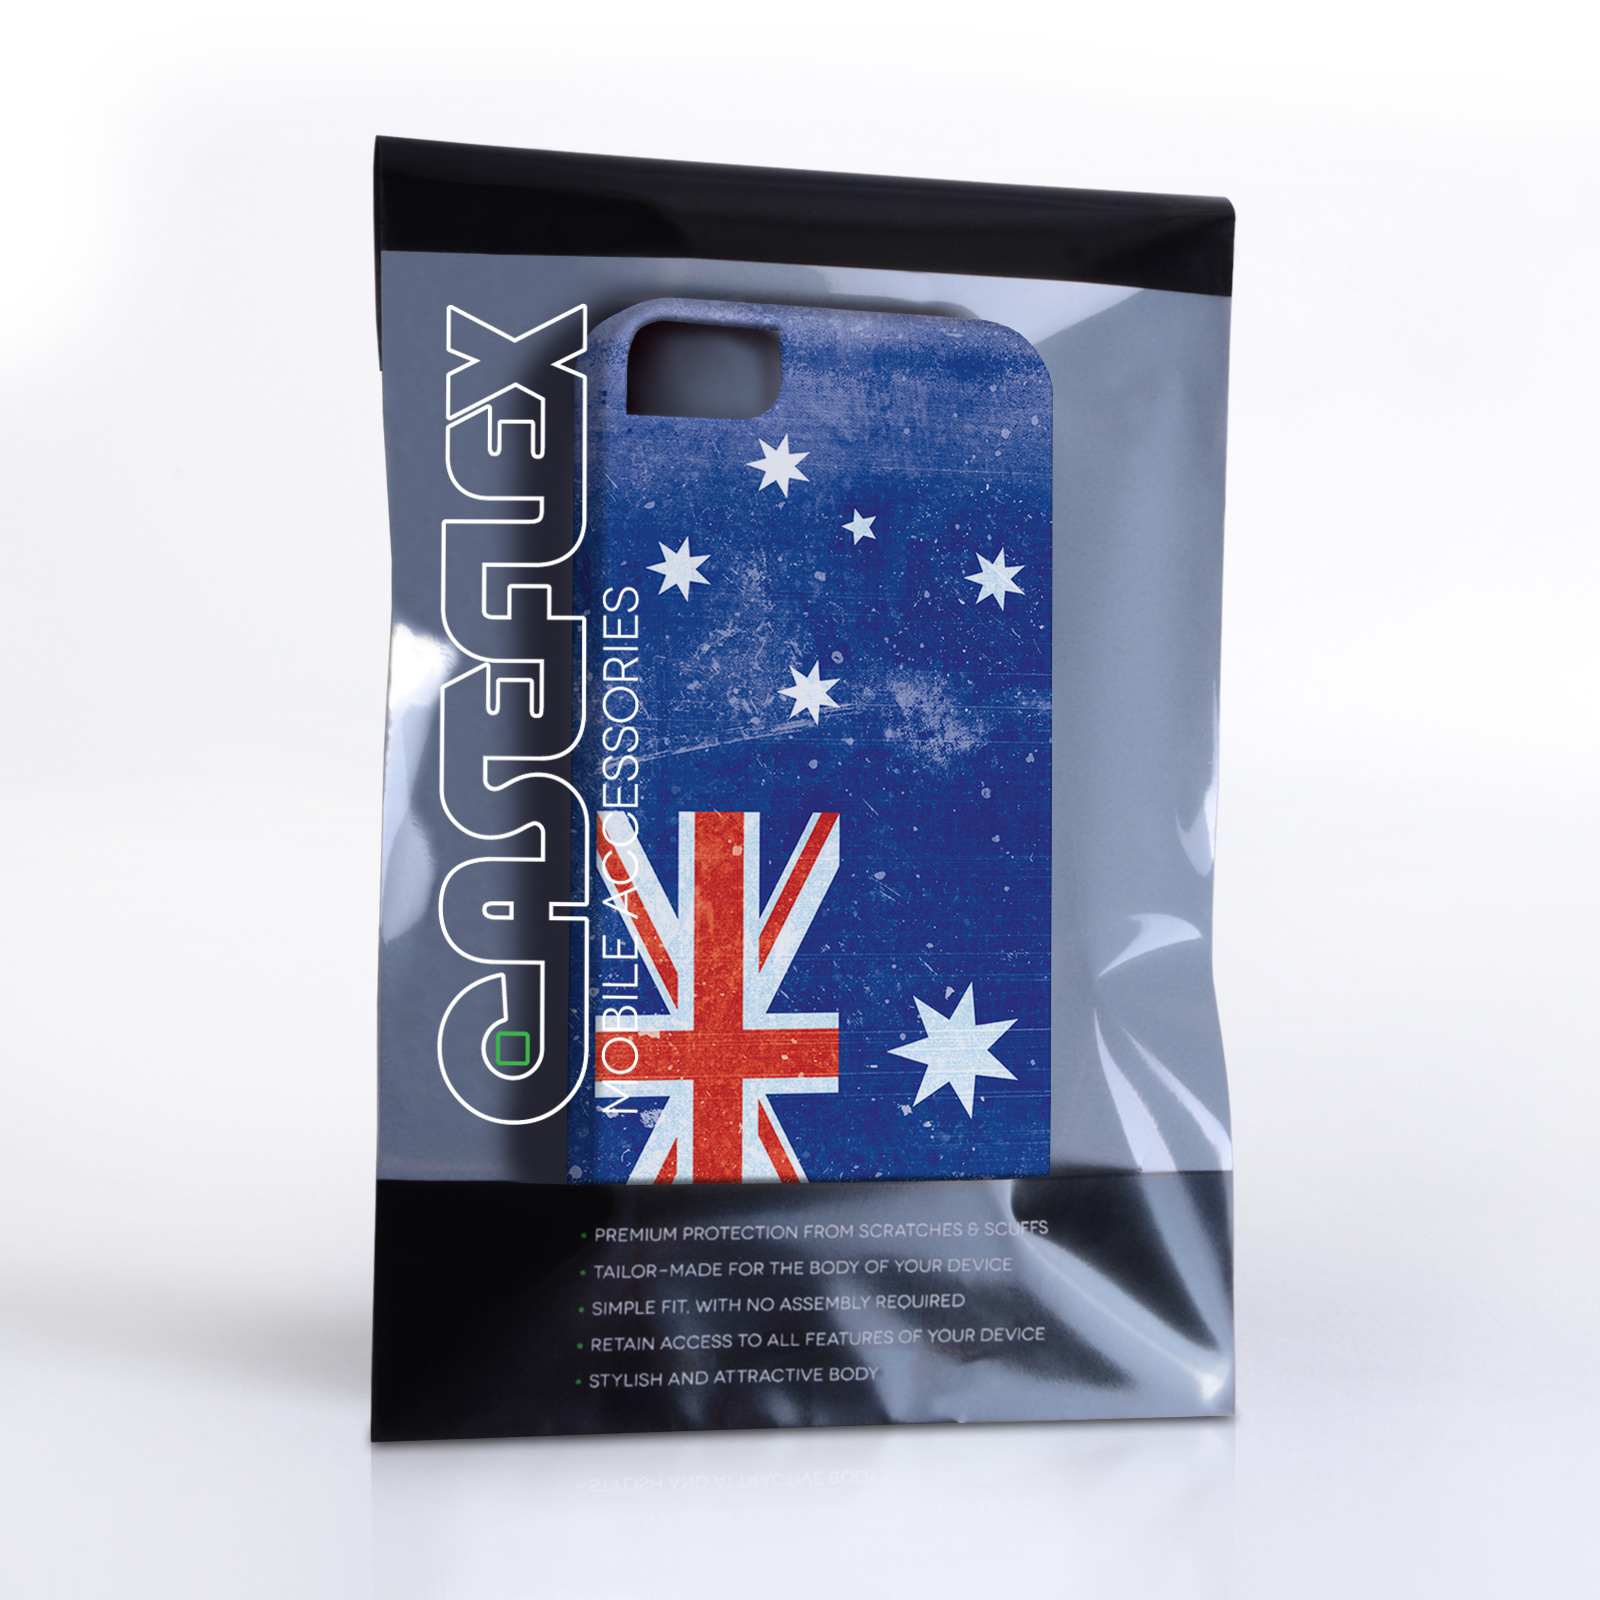 Caseflex iPhone 4/4s Retro Australia Flag Case